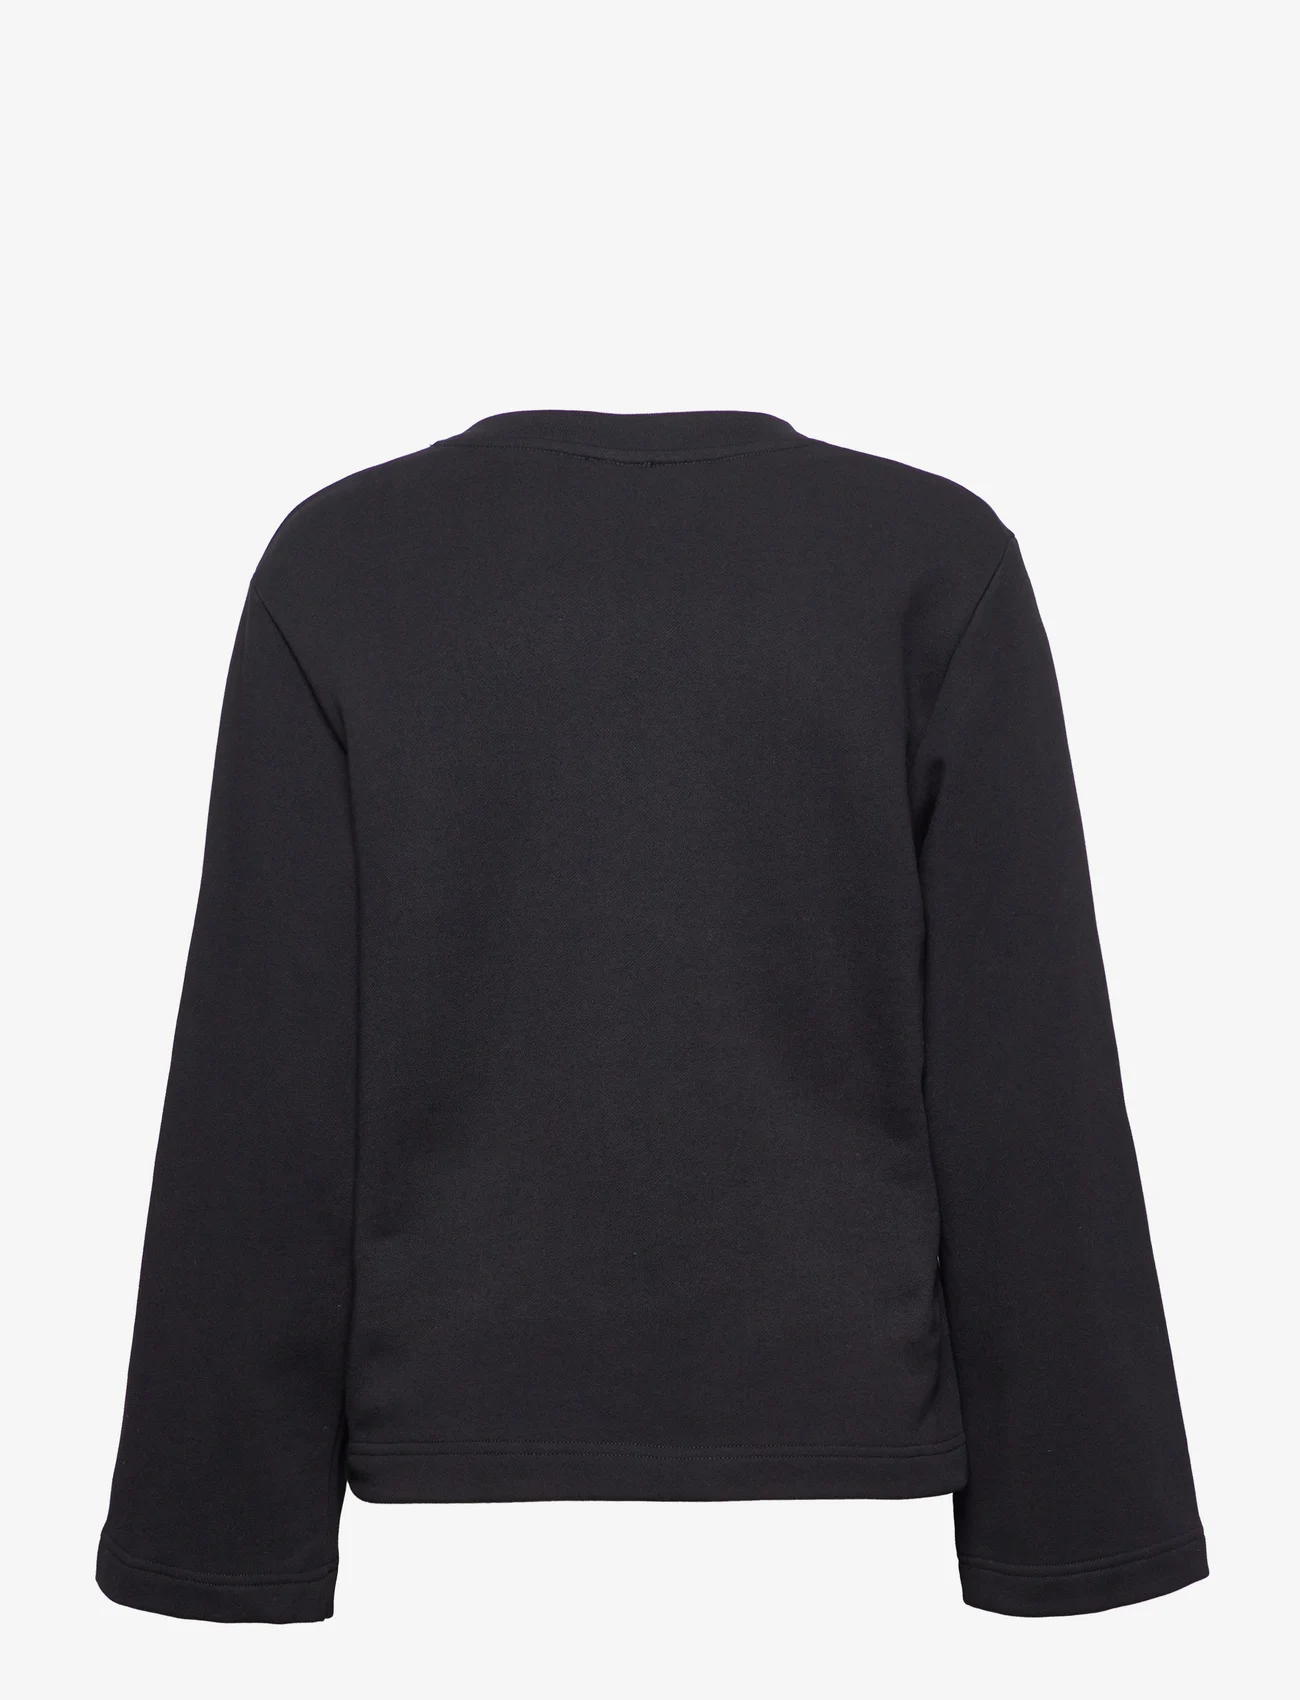 Filippa K - Mara Sweatshirt V-neck - black - 1